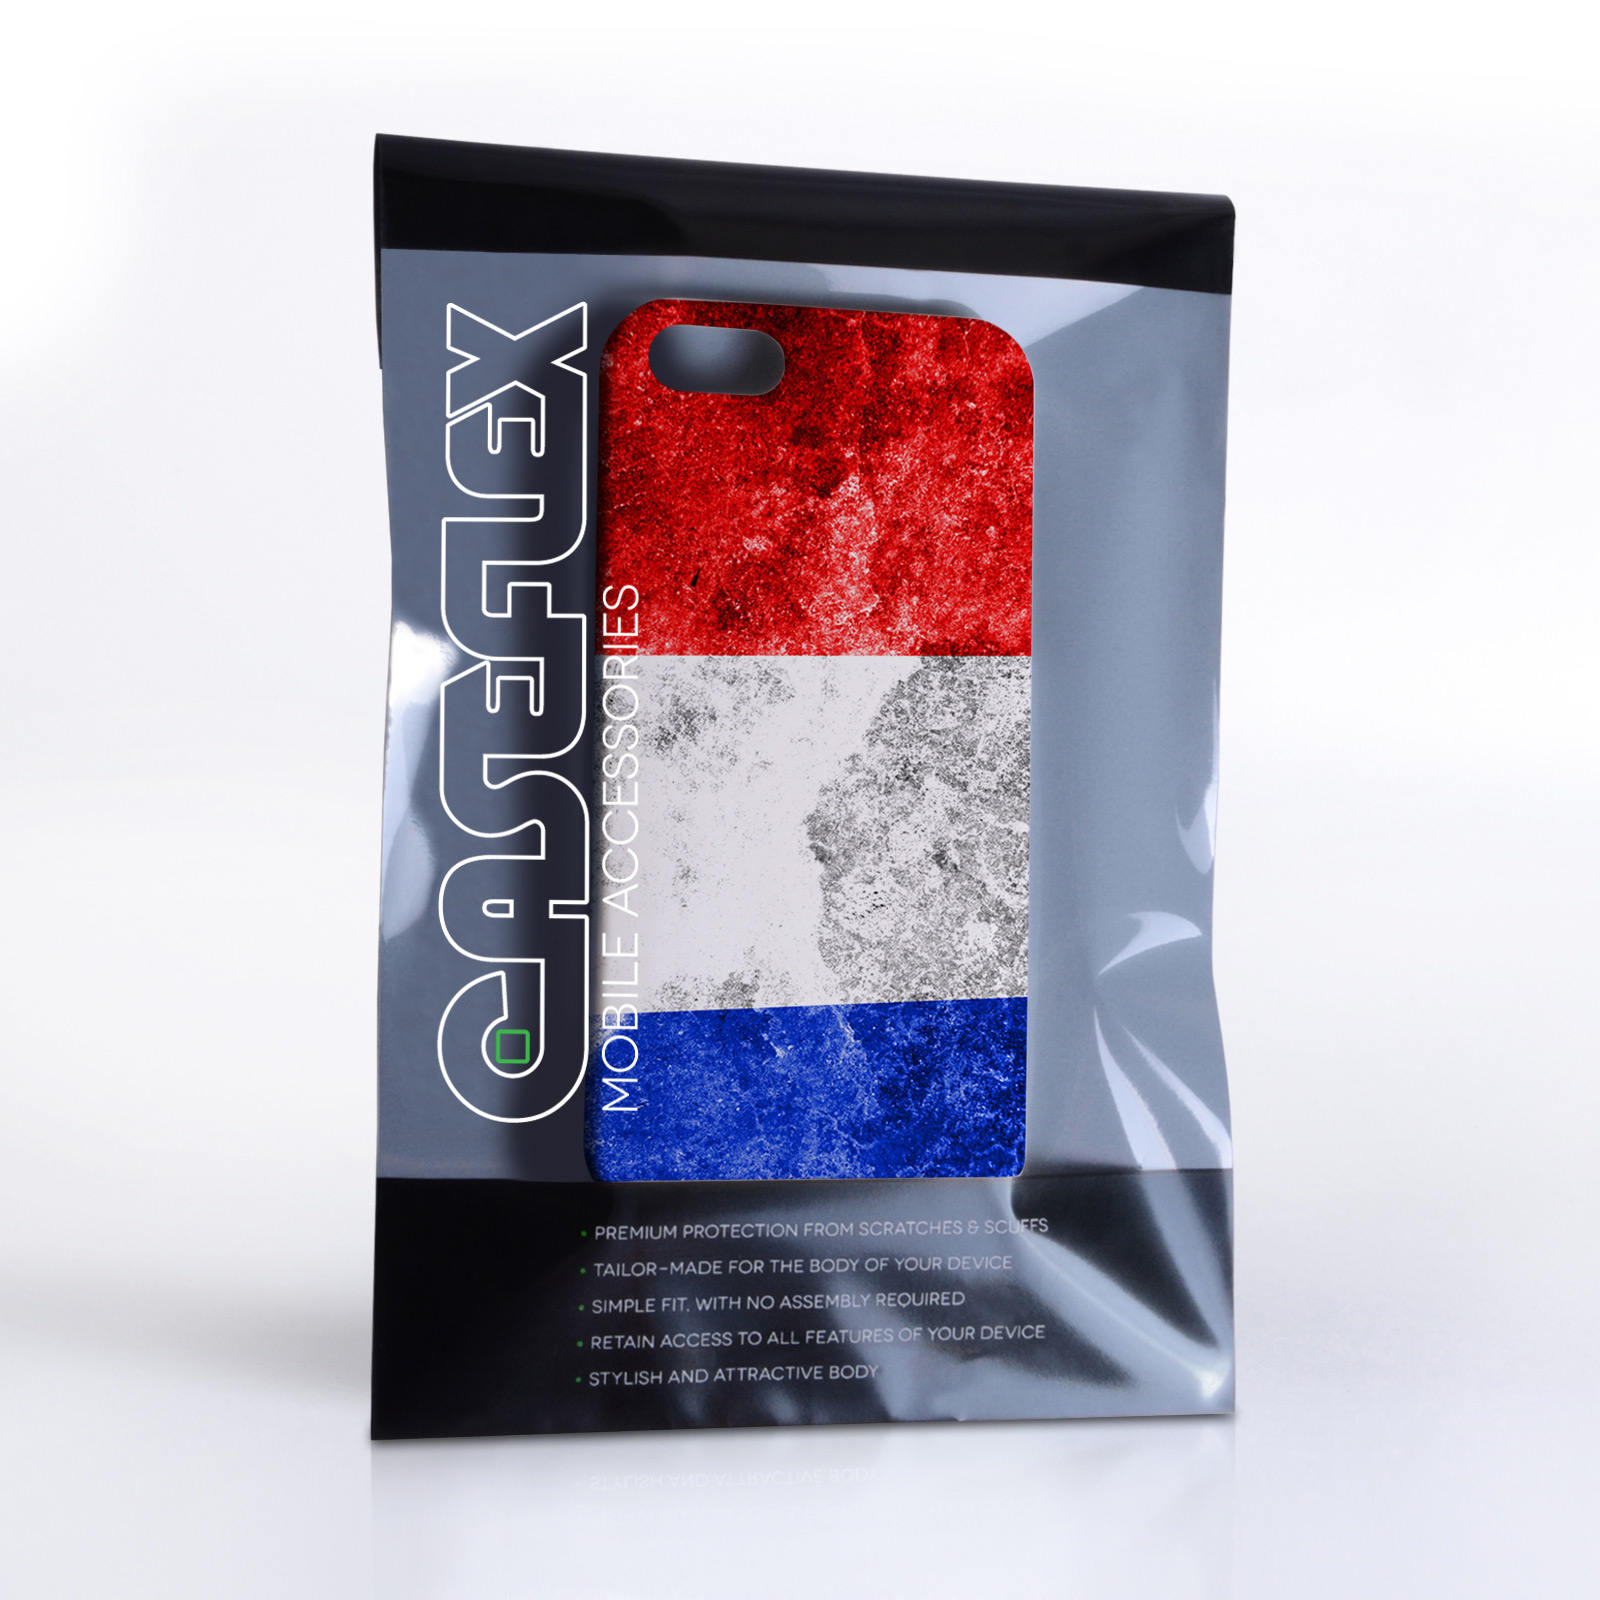 Caseflex iPhone 5 / 5S Retro Holland Flag Case